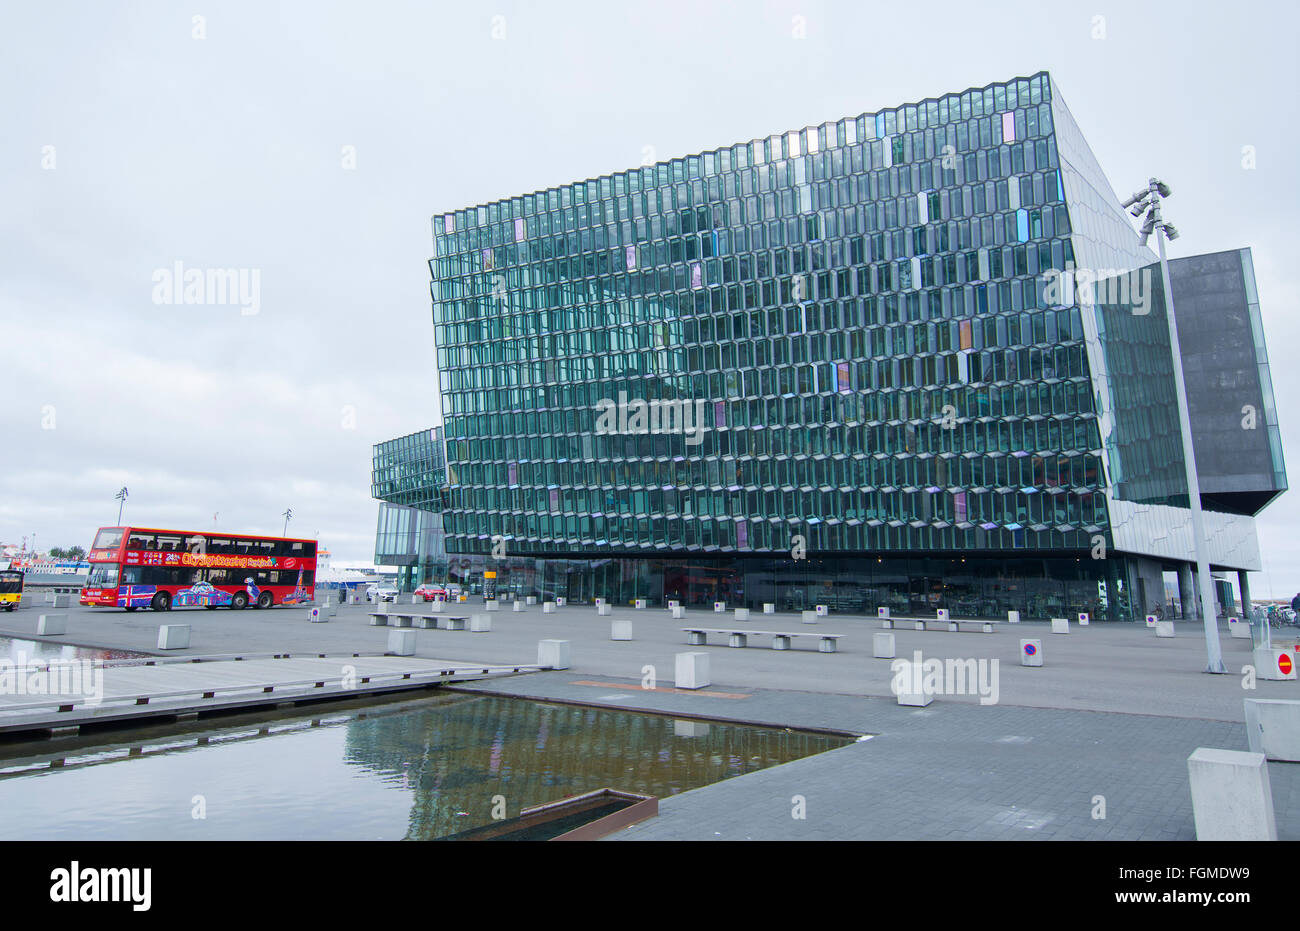 Le centre-ville de Reykjavik Islande Harbour Nouvel Opéra appelé le Harpa Concert Hall ouvert en 2011 Banque D'Images